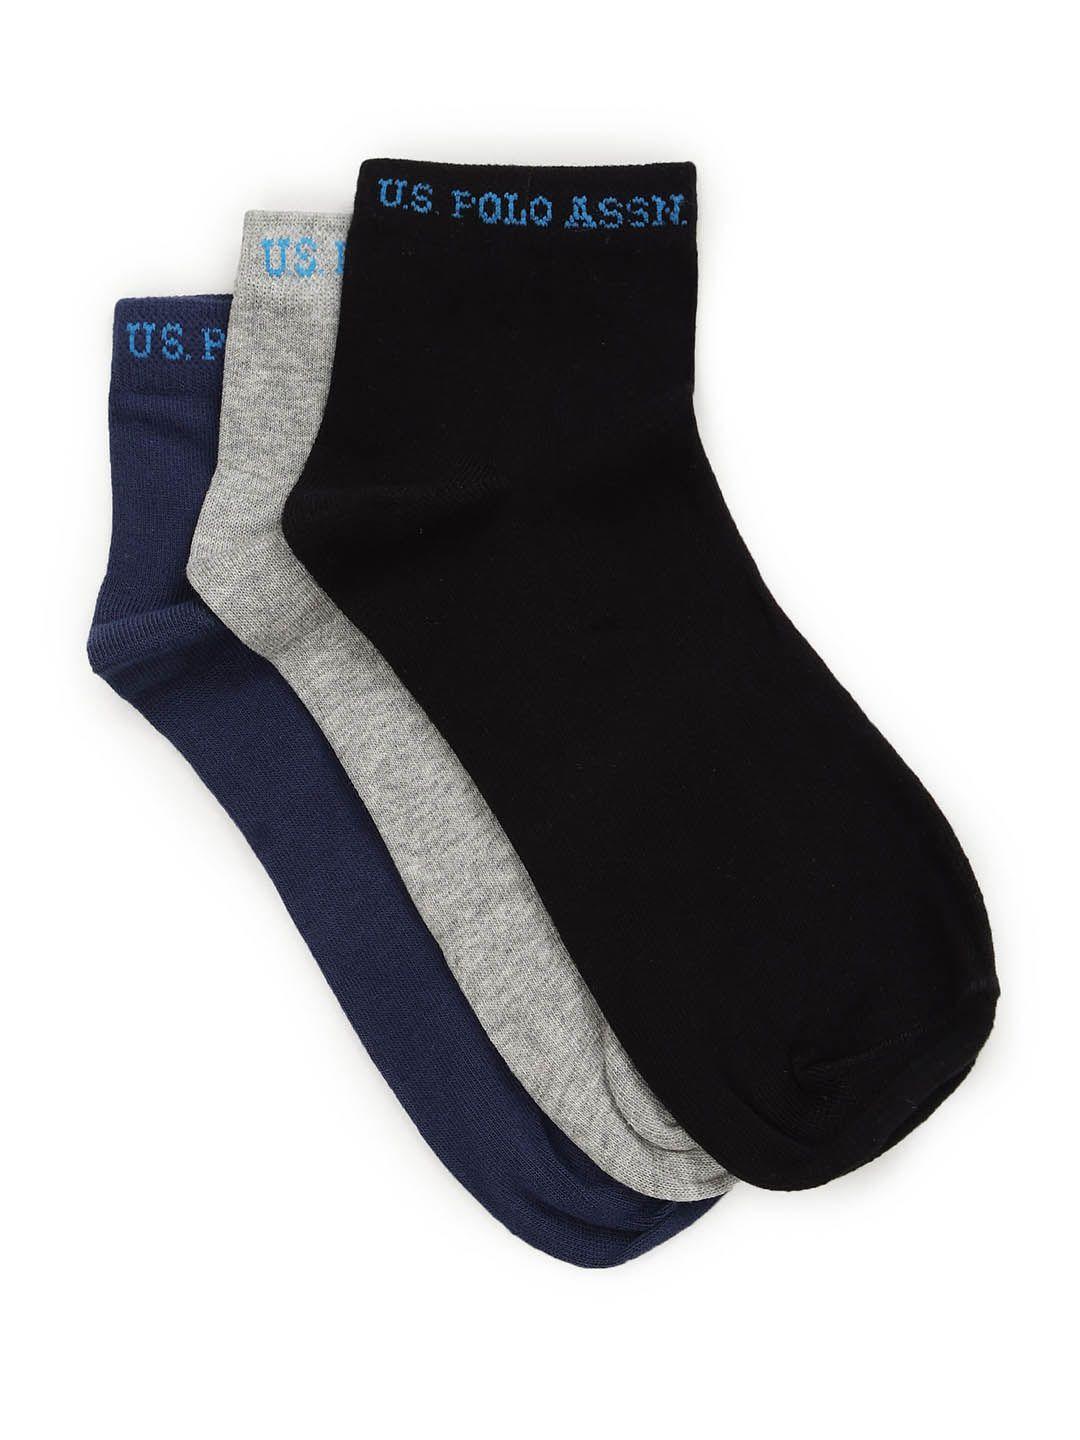 u.s. polo assn. men pack of 3 ankle length socks